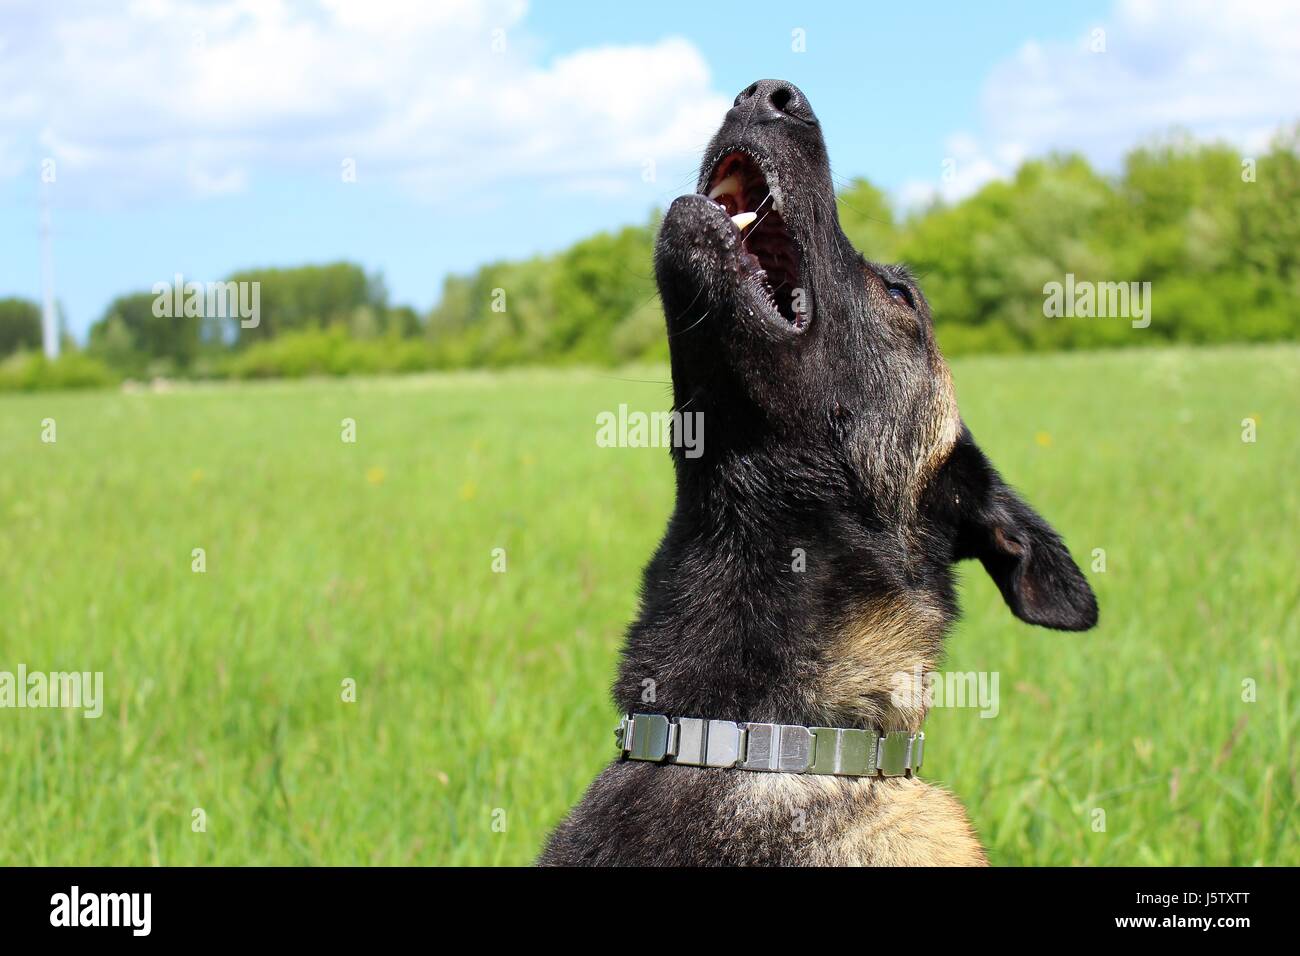 Belgian shepherd dog malinois Stock Photo